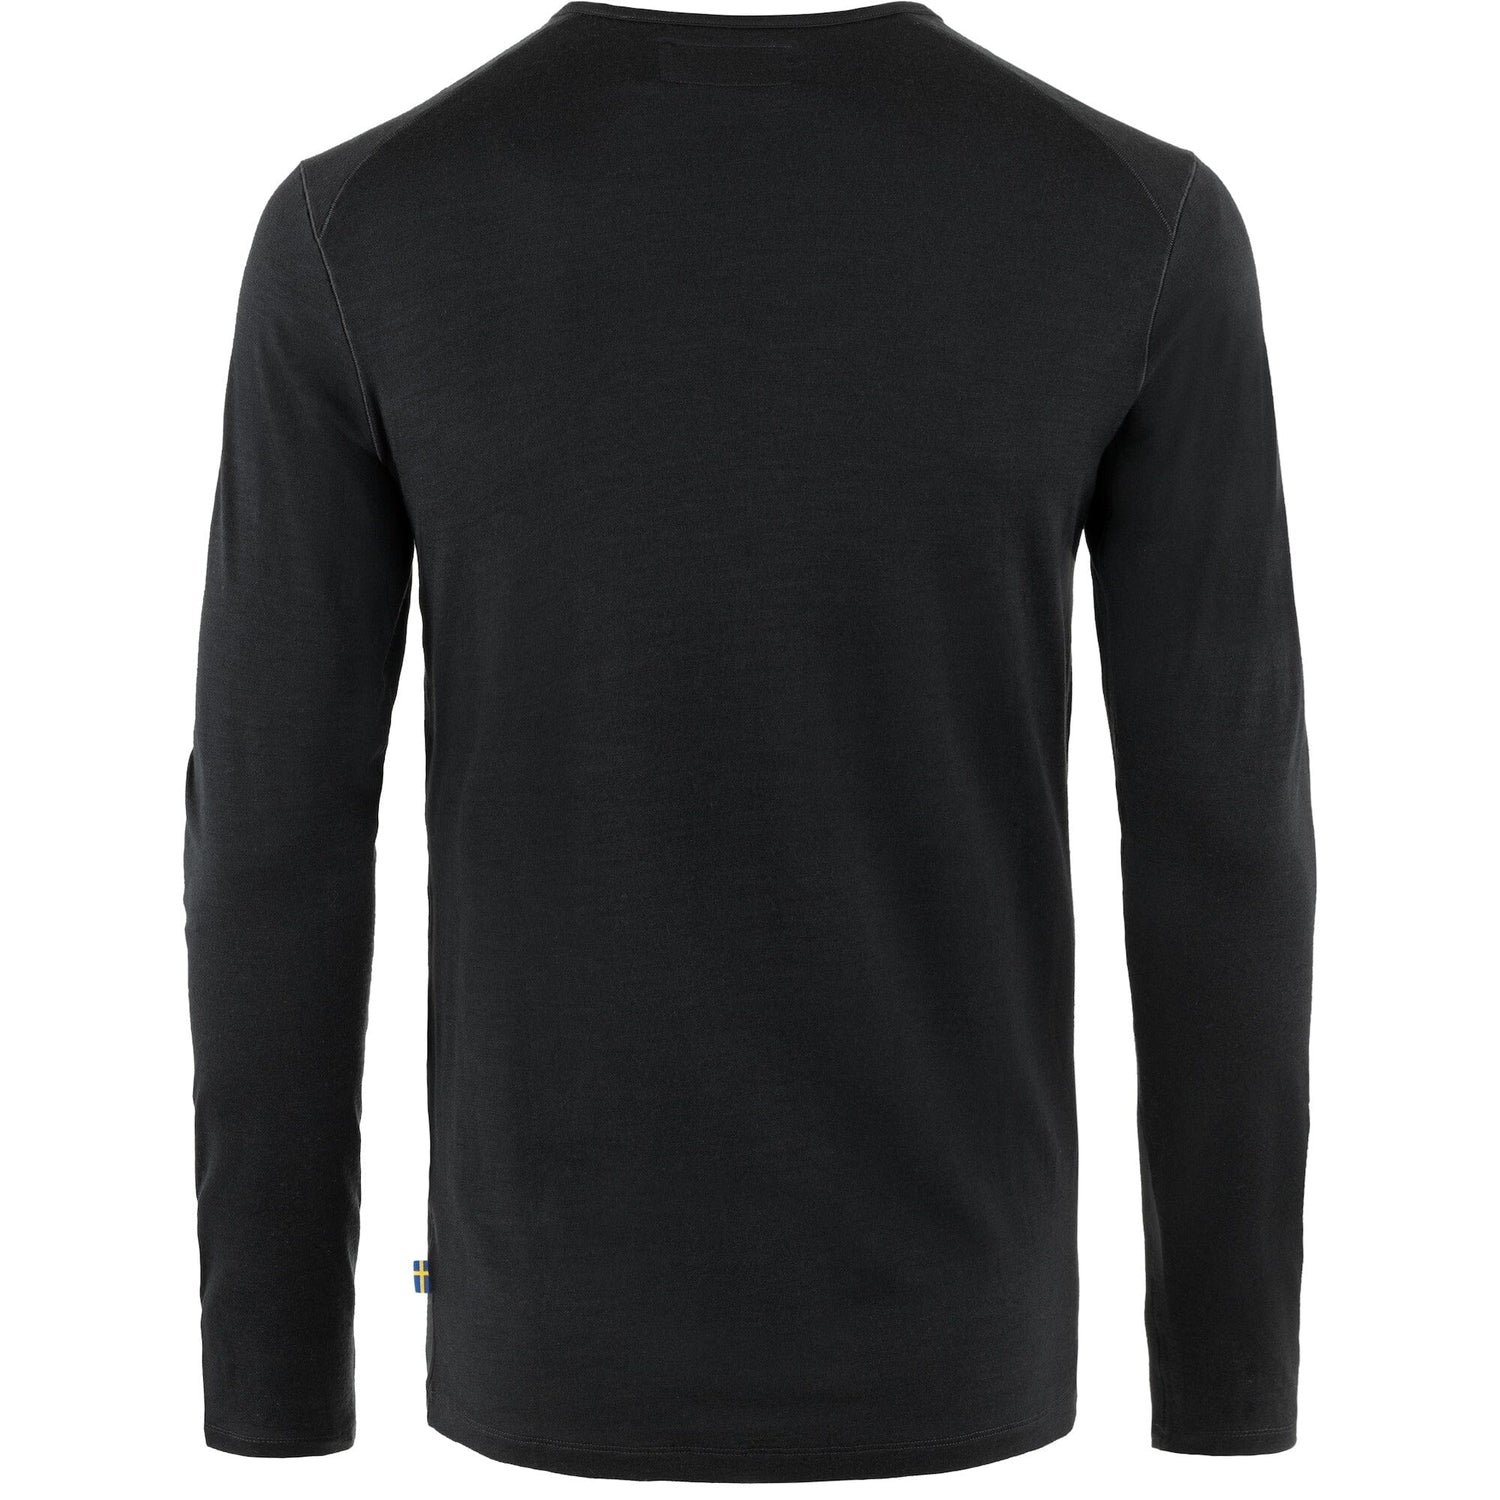 Fjällräven M's Bergtagen Thinwool LS - 100% Merino Wool Black Shirt